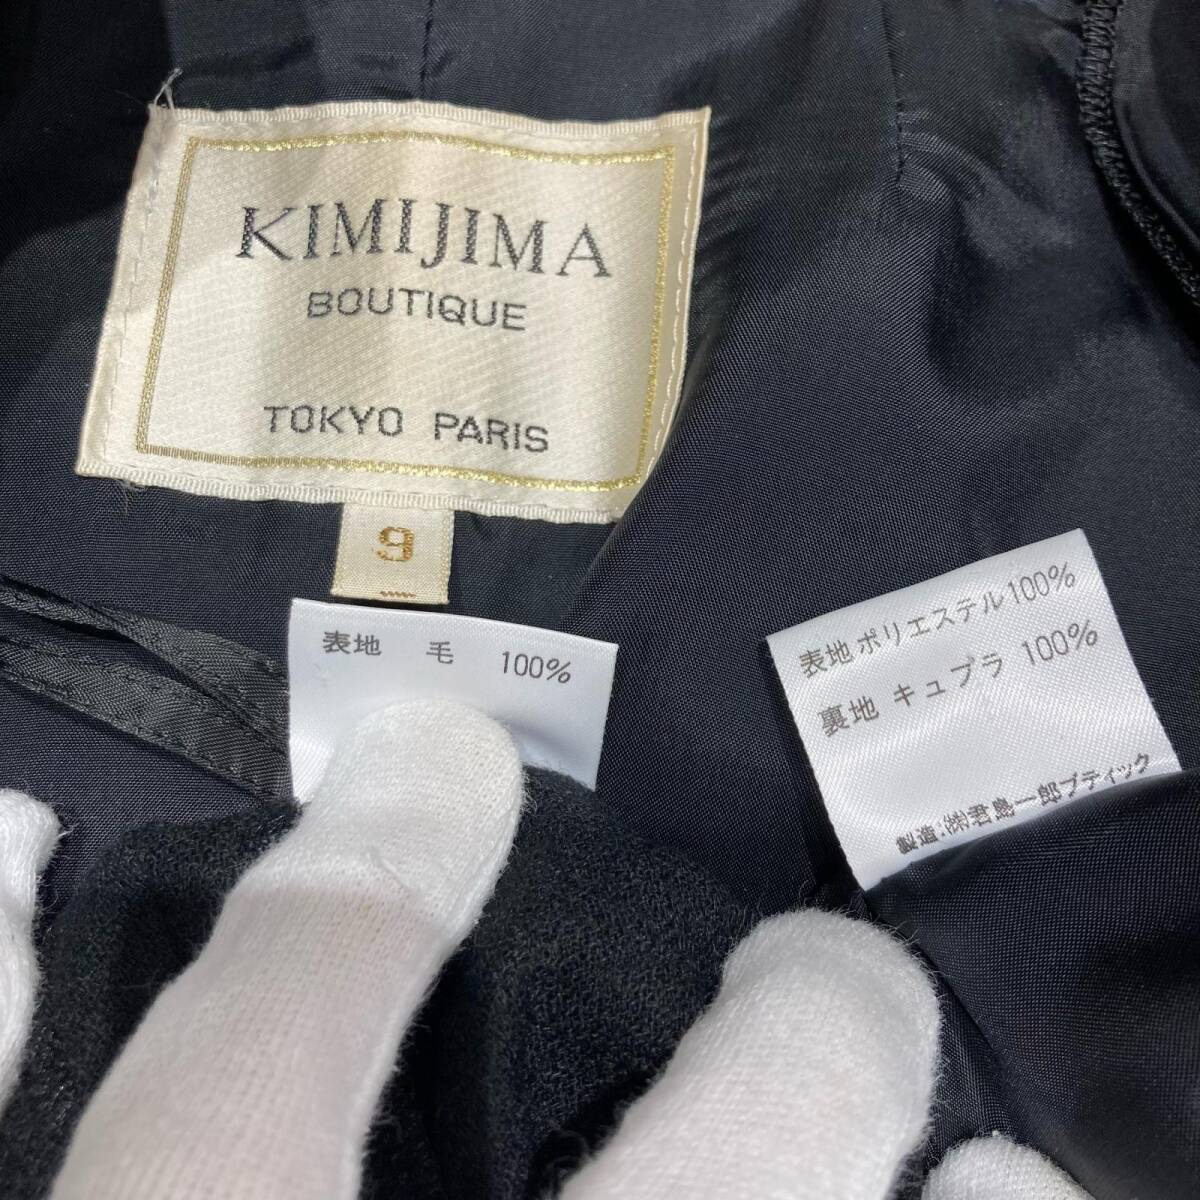 IMIJIMA キミジマ 君島 セットアップ ジャケット スカート レディース 9 ブラック系 千鳥格子 セットアップの画像9